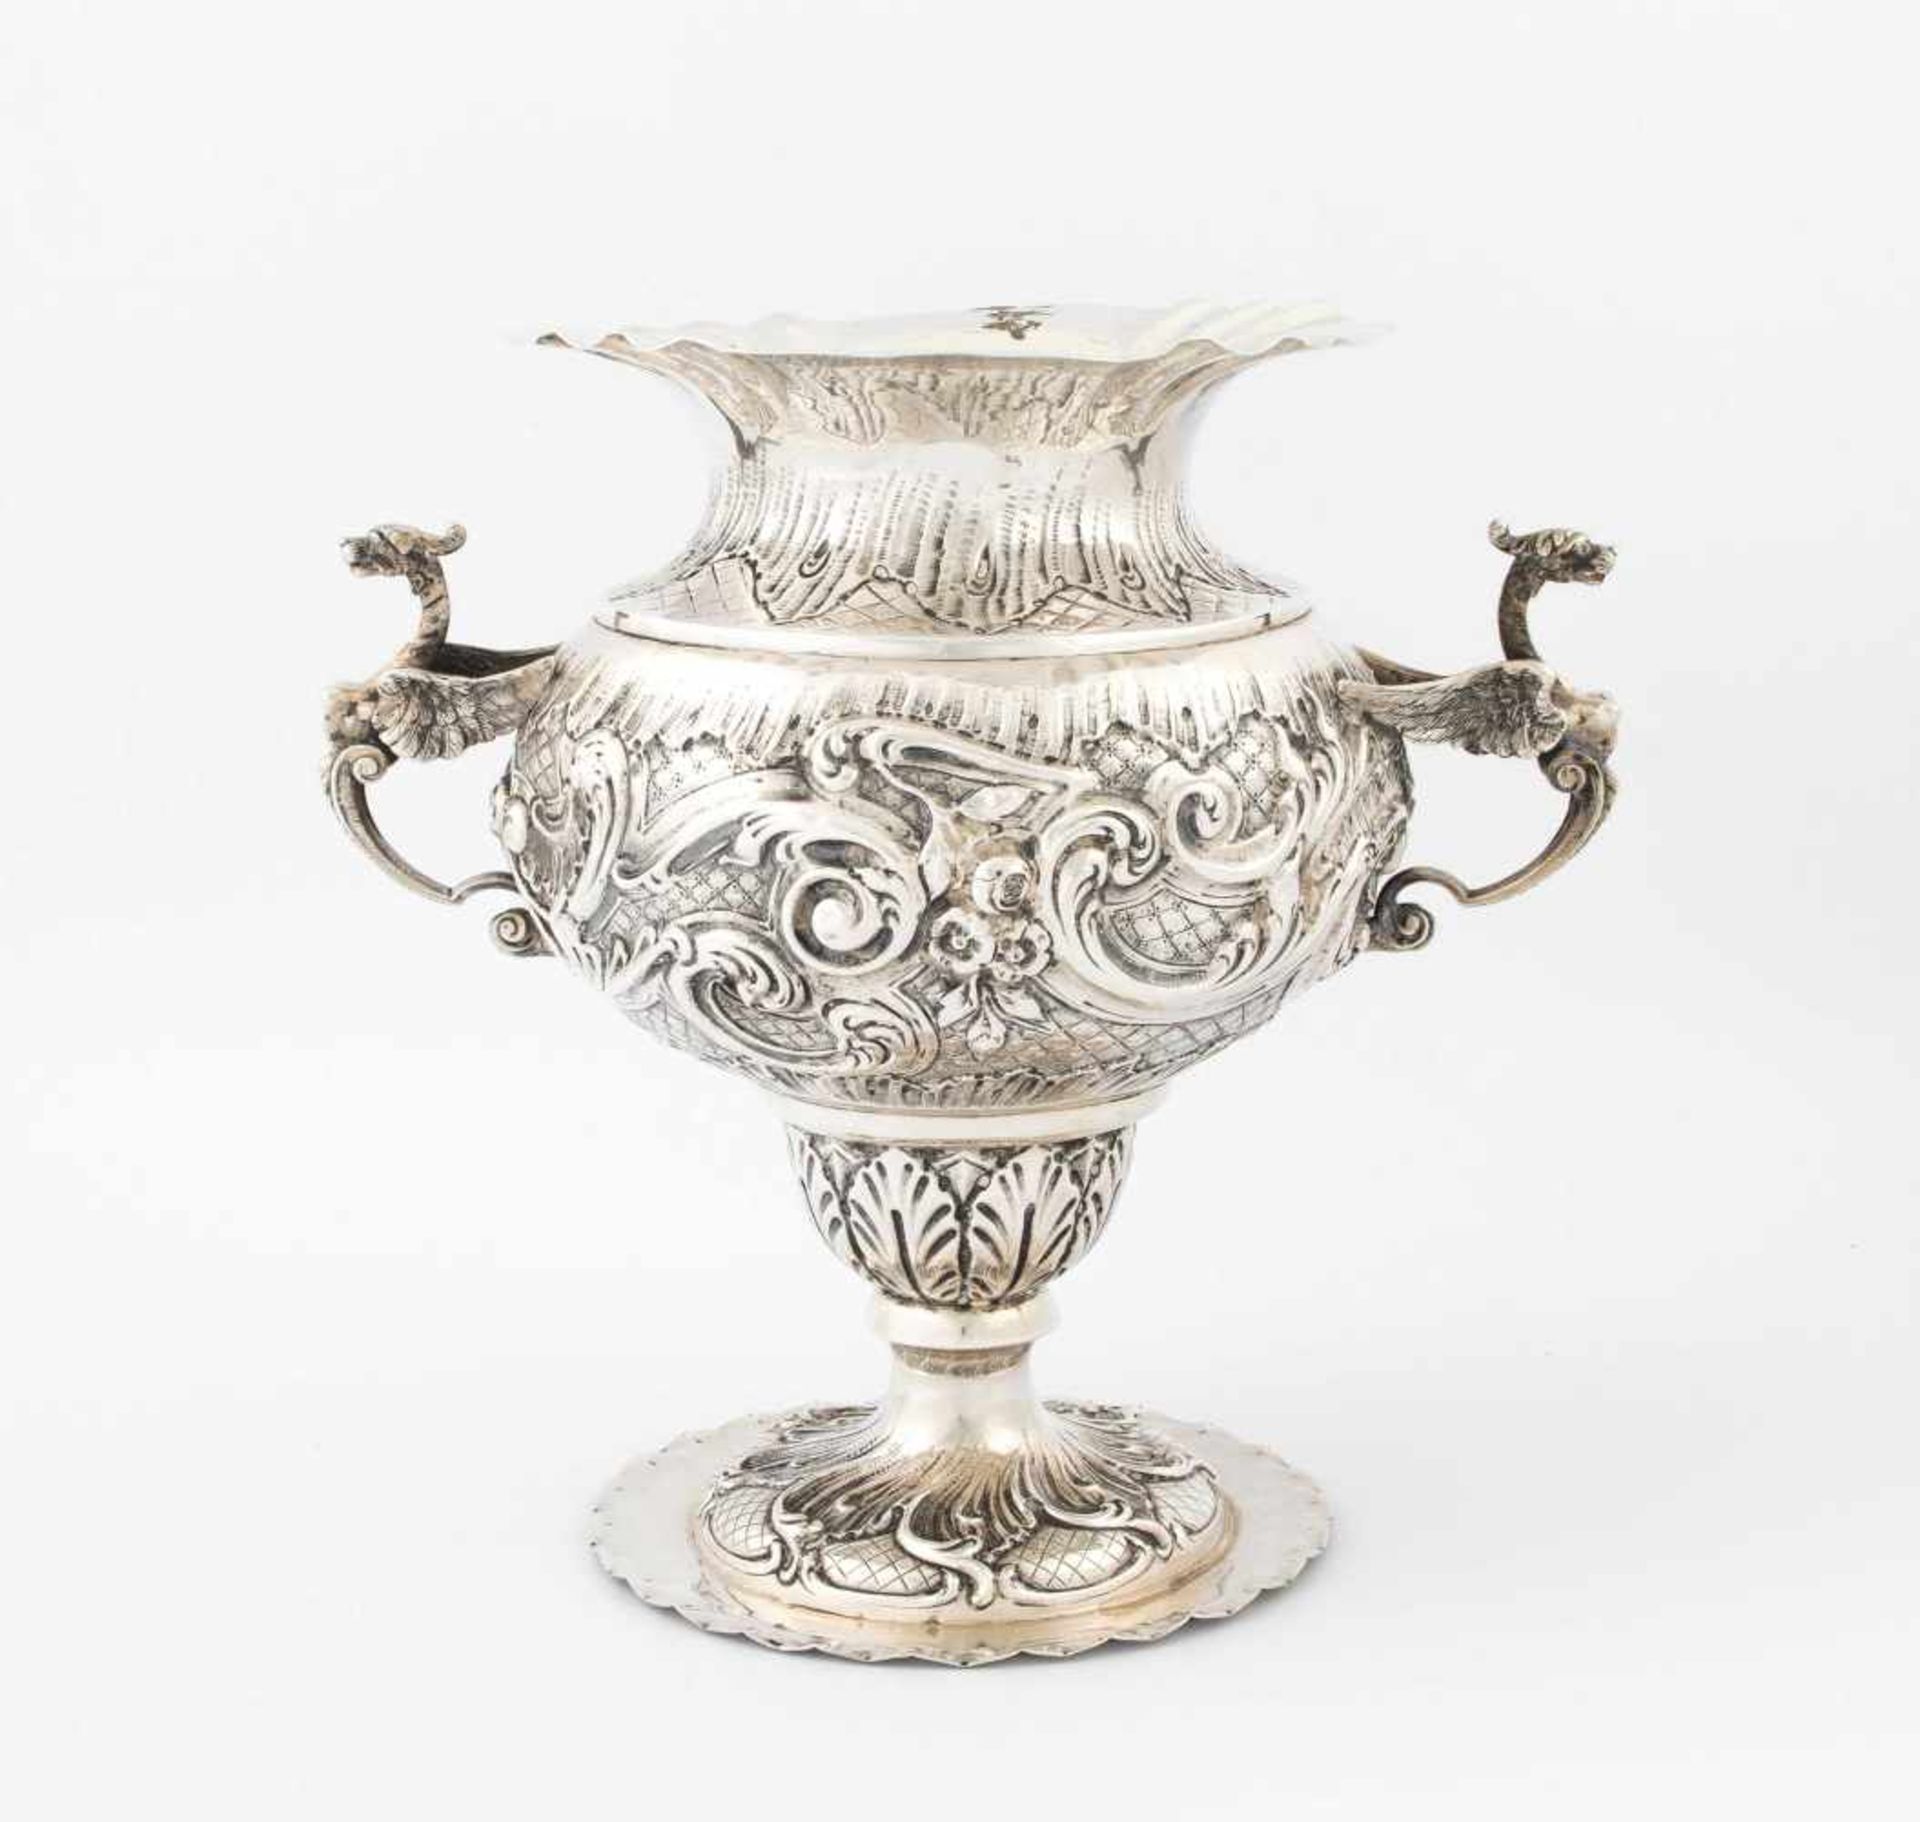 Grosse VaseWohl Deutschland, um 1900. Silber. Balusterform mit Chimären-Henkeln. Wandung reich